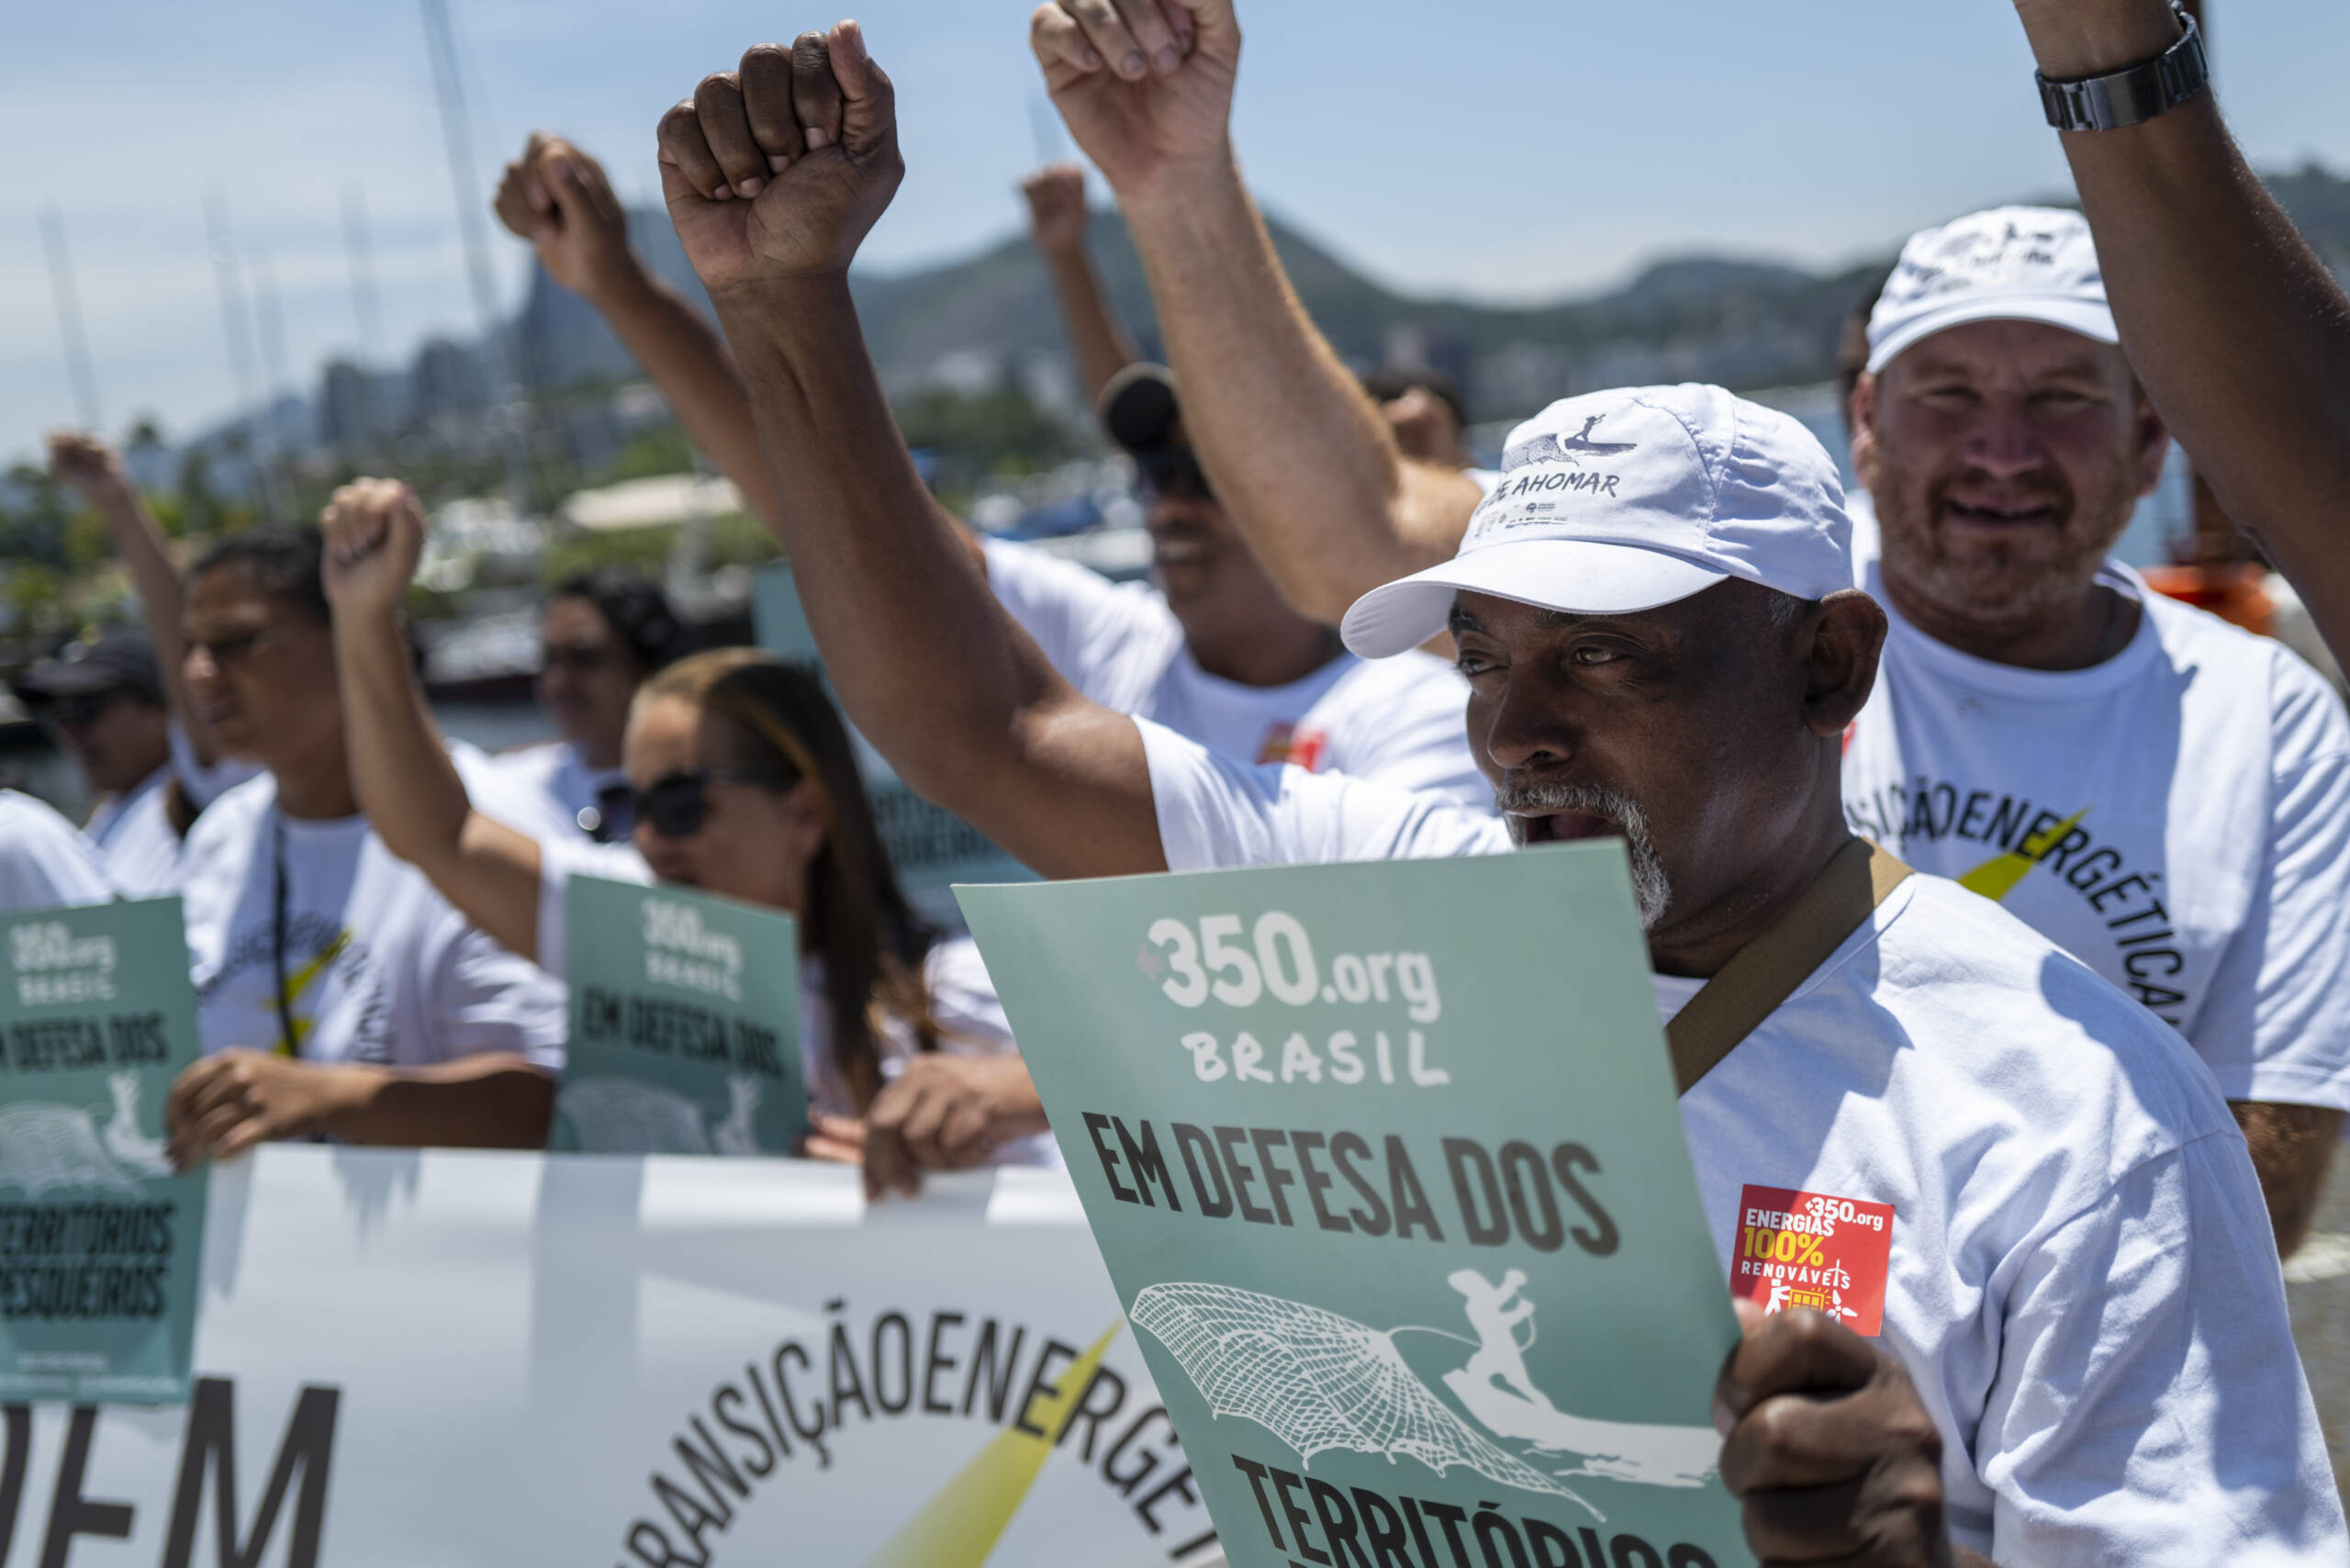 Rio de Janeiro, Brasil, 3 de novembro: pescadores artesanais protestam em frente à Baía de Guanabara, exigindo que o governo brasileiro pare de subsidiar petróleo e gás e invista mais em fontes de energia renovável. Foto: Lucas Landau